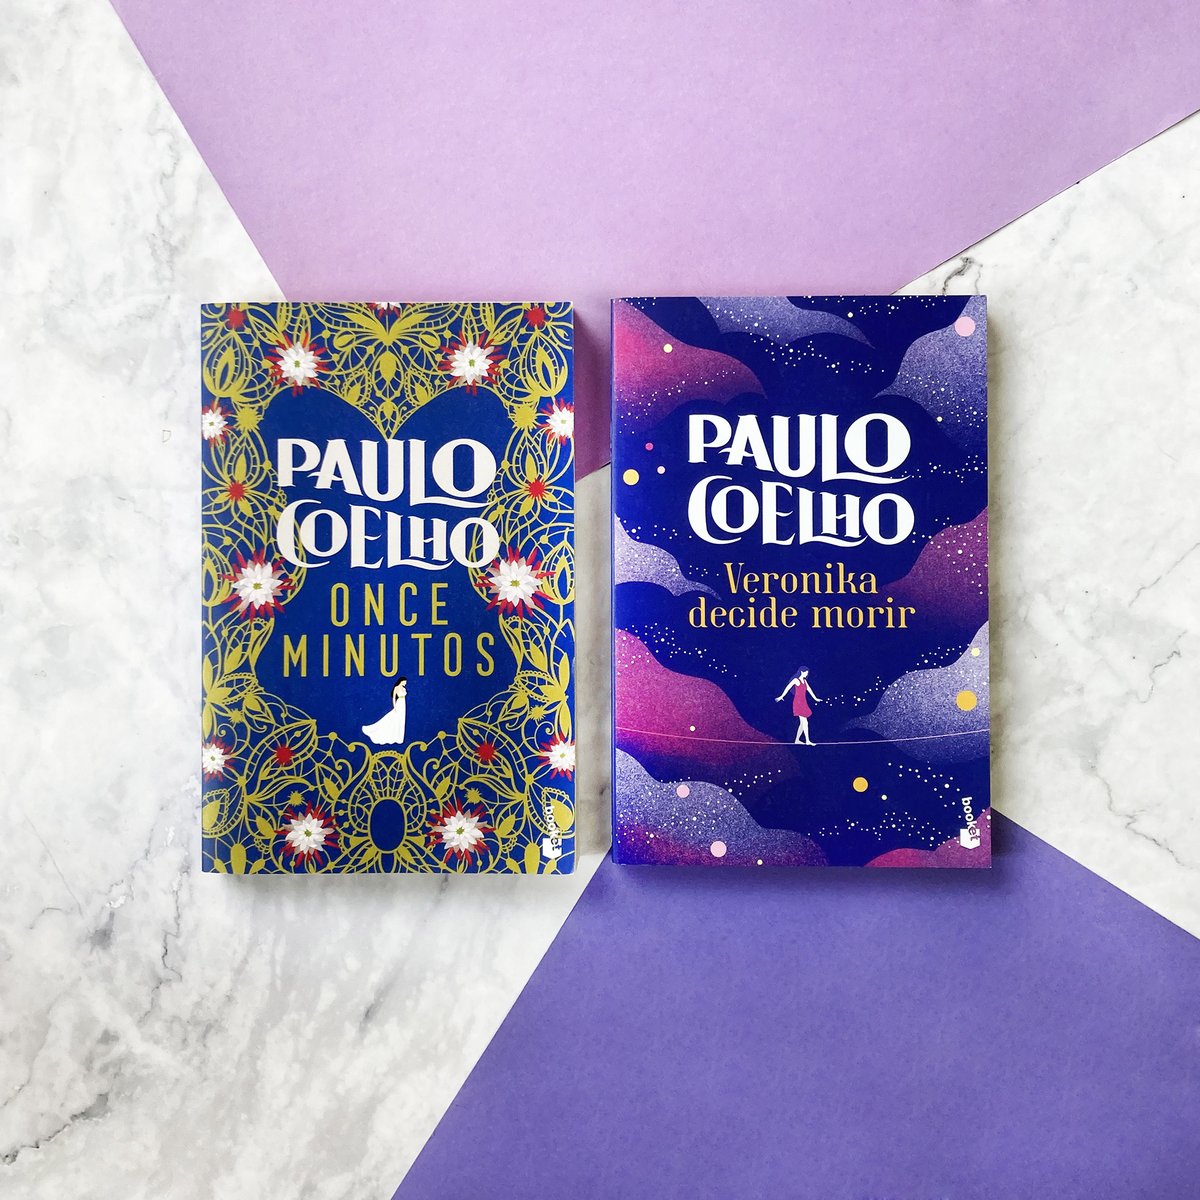 Estas dos historias de #PauloCoelho nos presentan a protagonistas femeninas que, tras vivir experiencias dramáticas, buscan segundas oportunidades para encontrarle un nuevo sentido a la vida. Son mujeres fuertes y valientes que luchan por superarse. #8M ow.ly/eLSk50QOstI